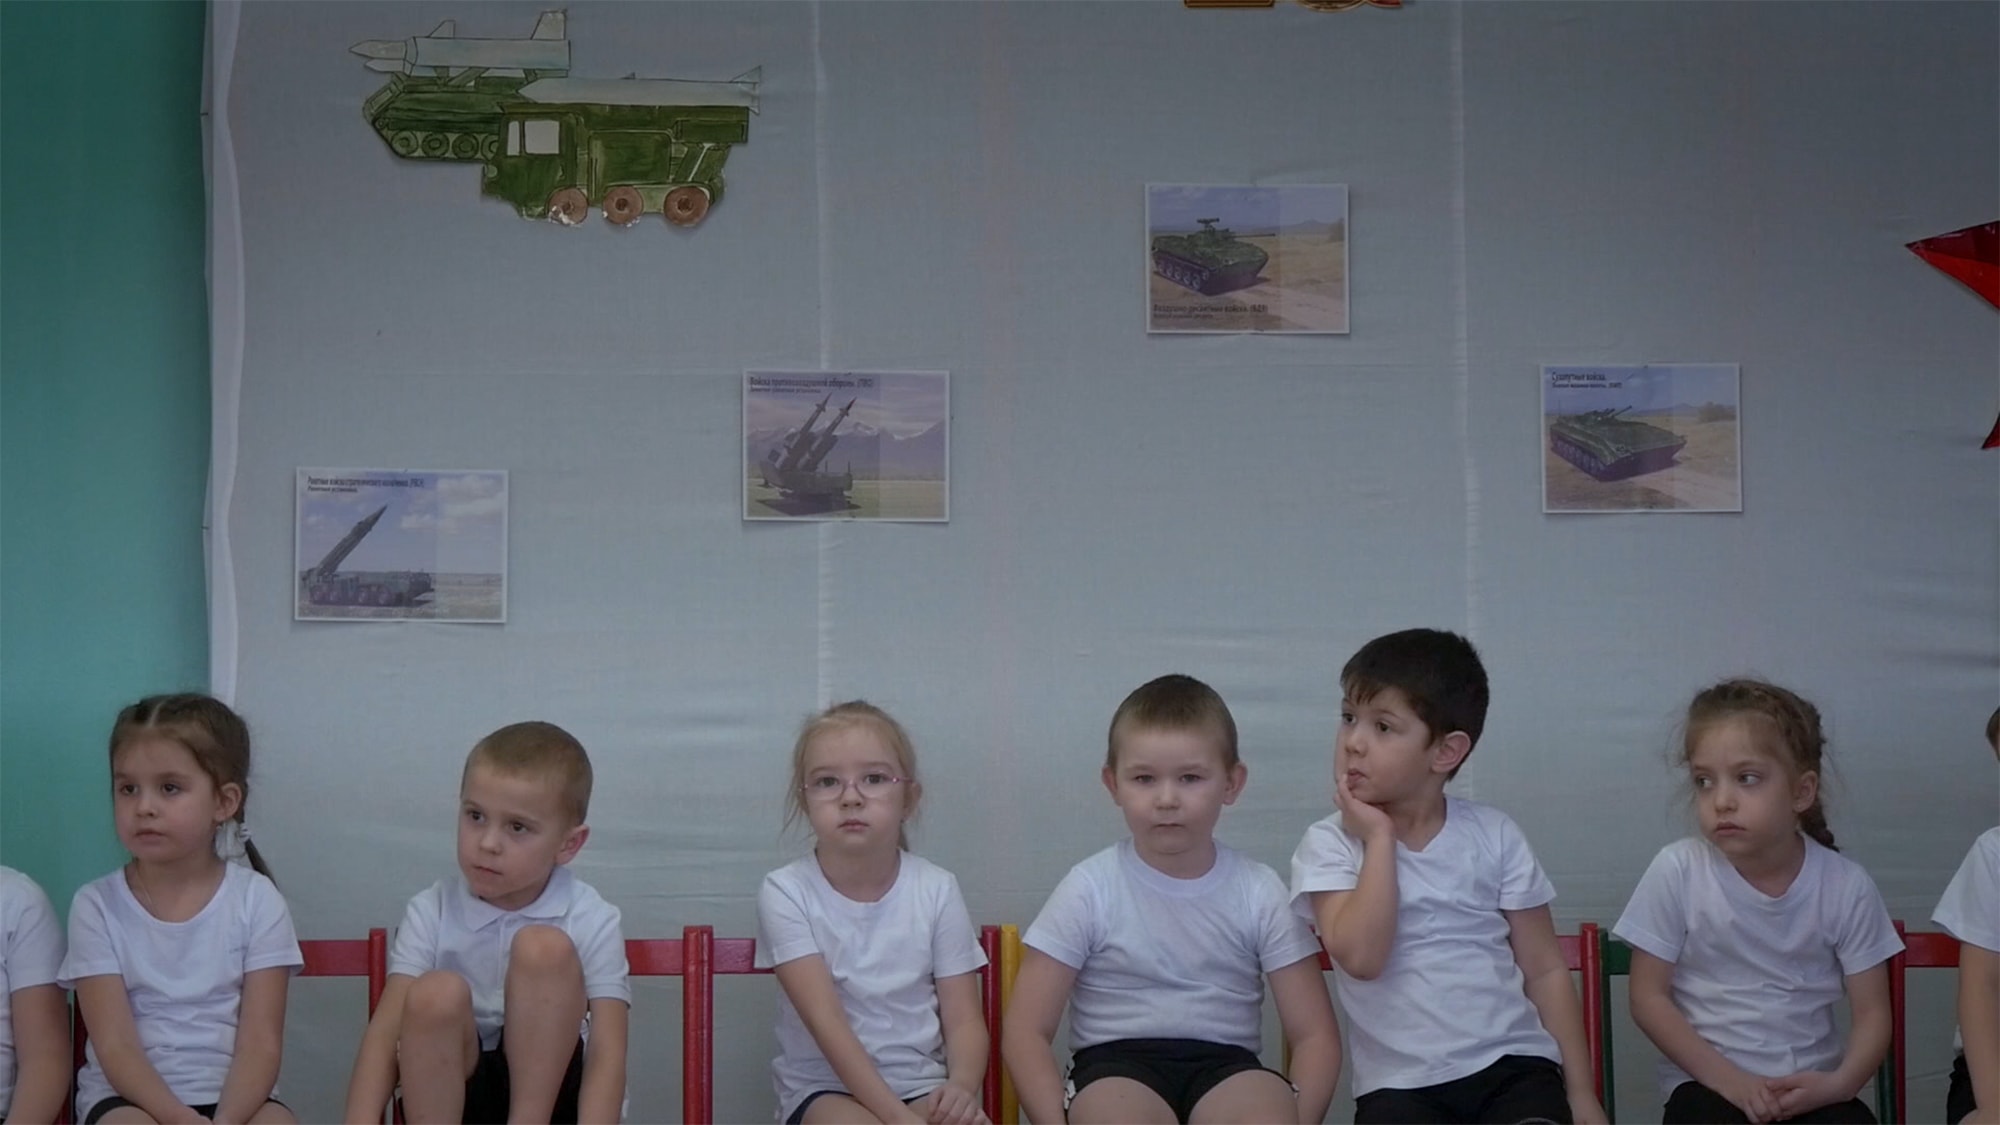 ילדים בגן שרים שירי צבא רוסיים בילניה, רוסיה, מתוך הסרט התיעודי &quot;עיר תהילה&quot; (צילום: באדיבות First Hand Films)